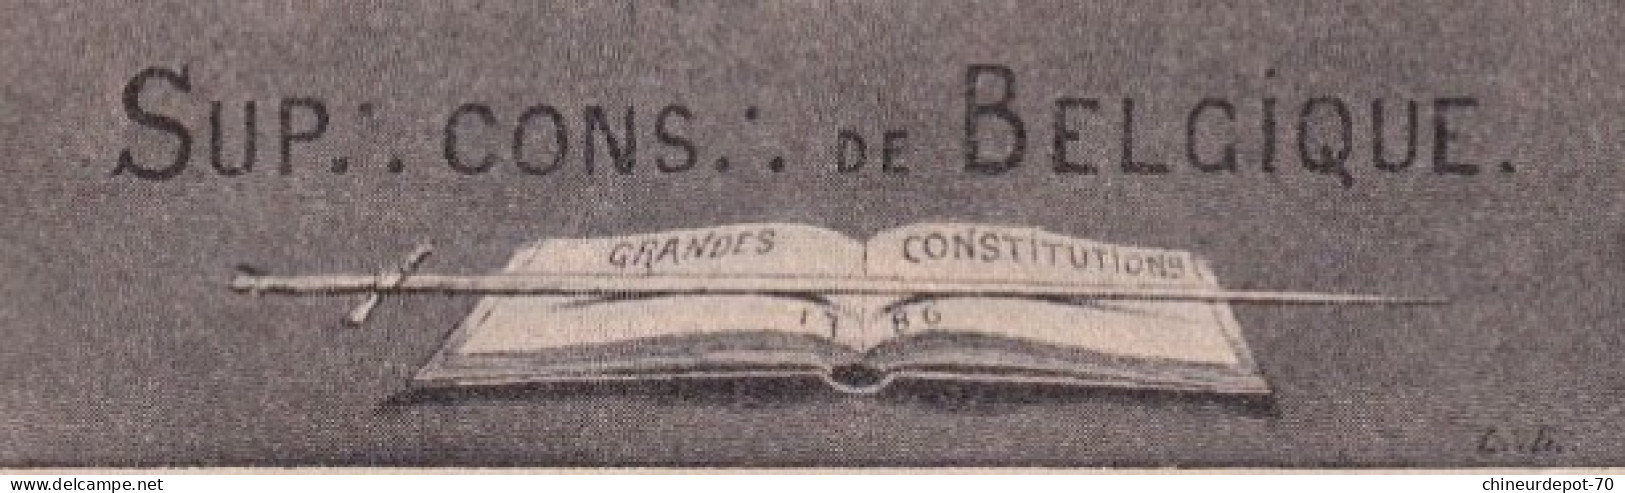 CONFERENCE INTERNATIONALE D DE 1907 SUP CONS DE BELGIQUE GRANDES CONSTITUTIONS - Internationale Institutionen